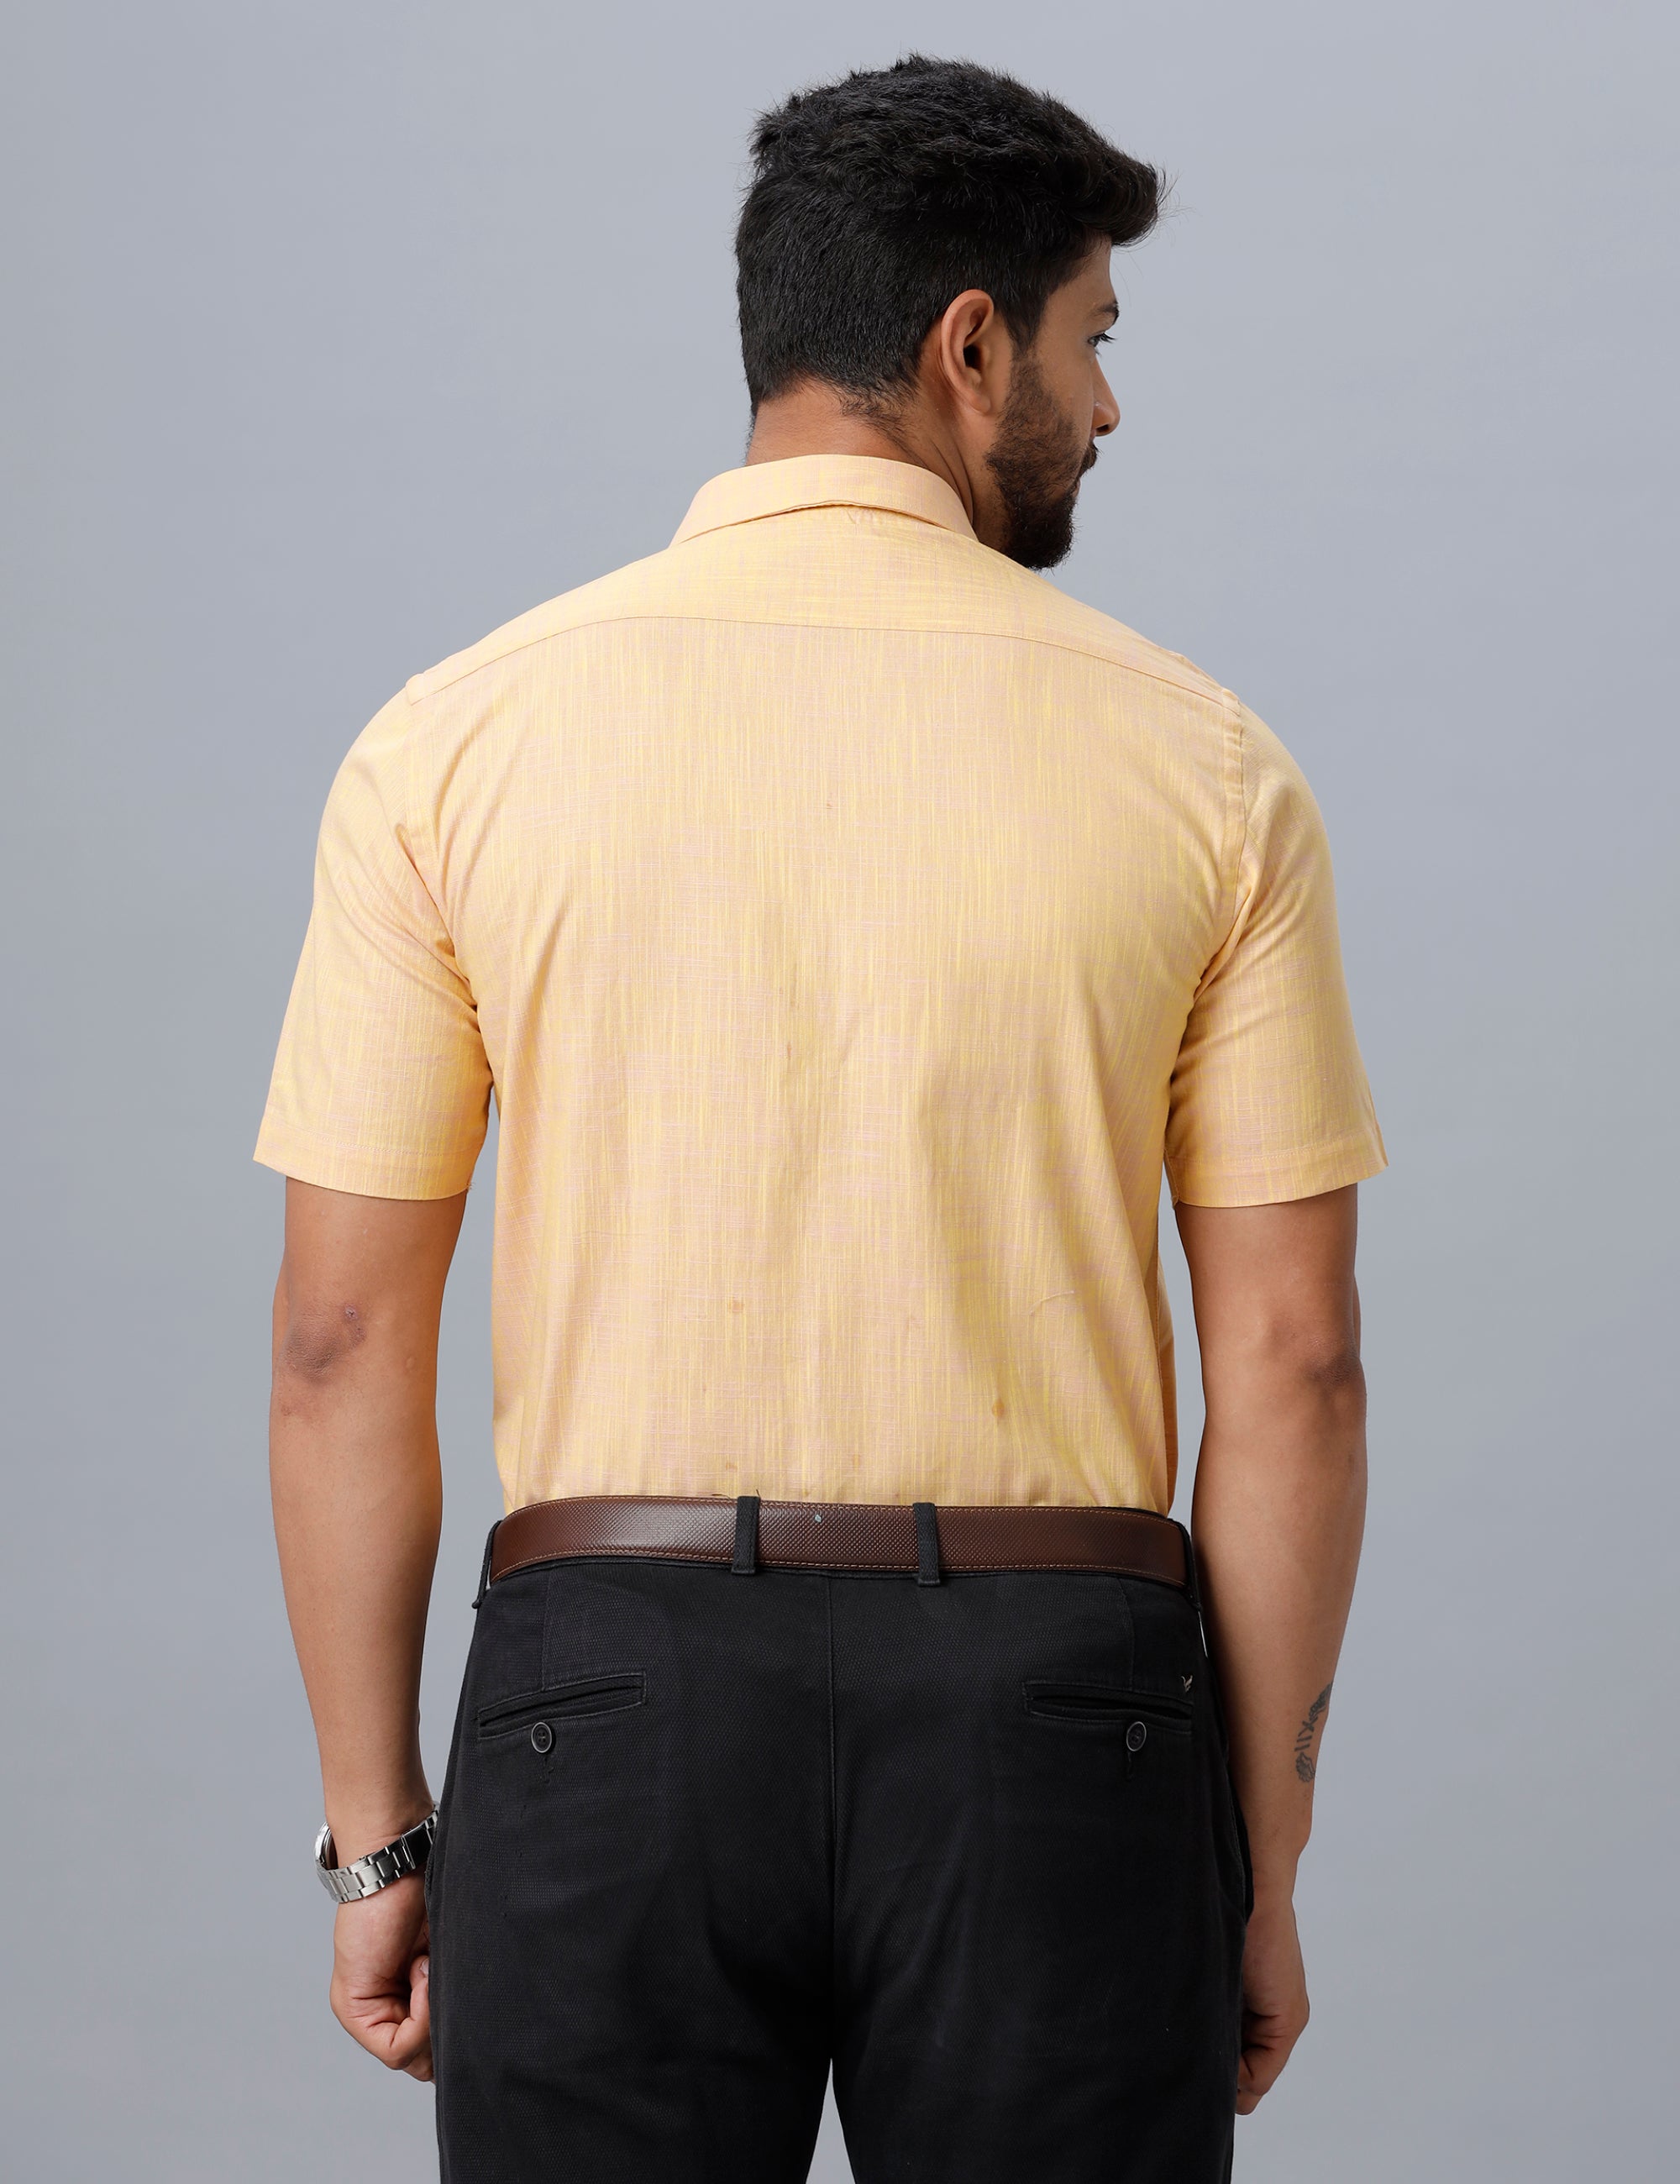 Mens Formal Shirt Half Sleeves Light Orange CL2 GT16-Back view